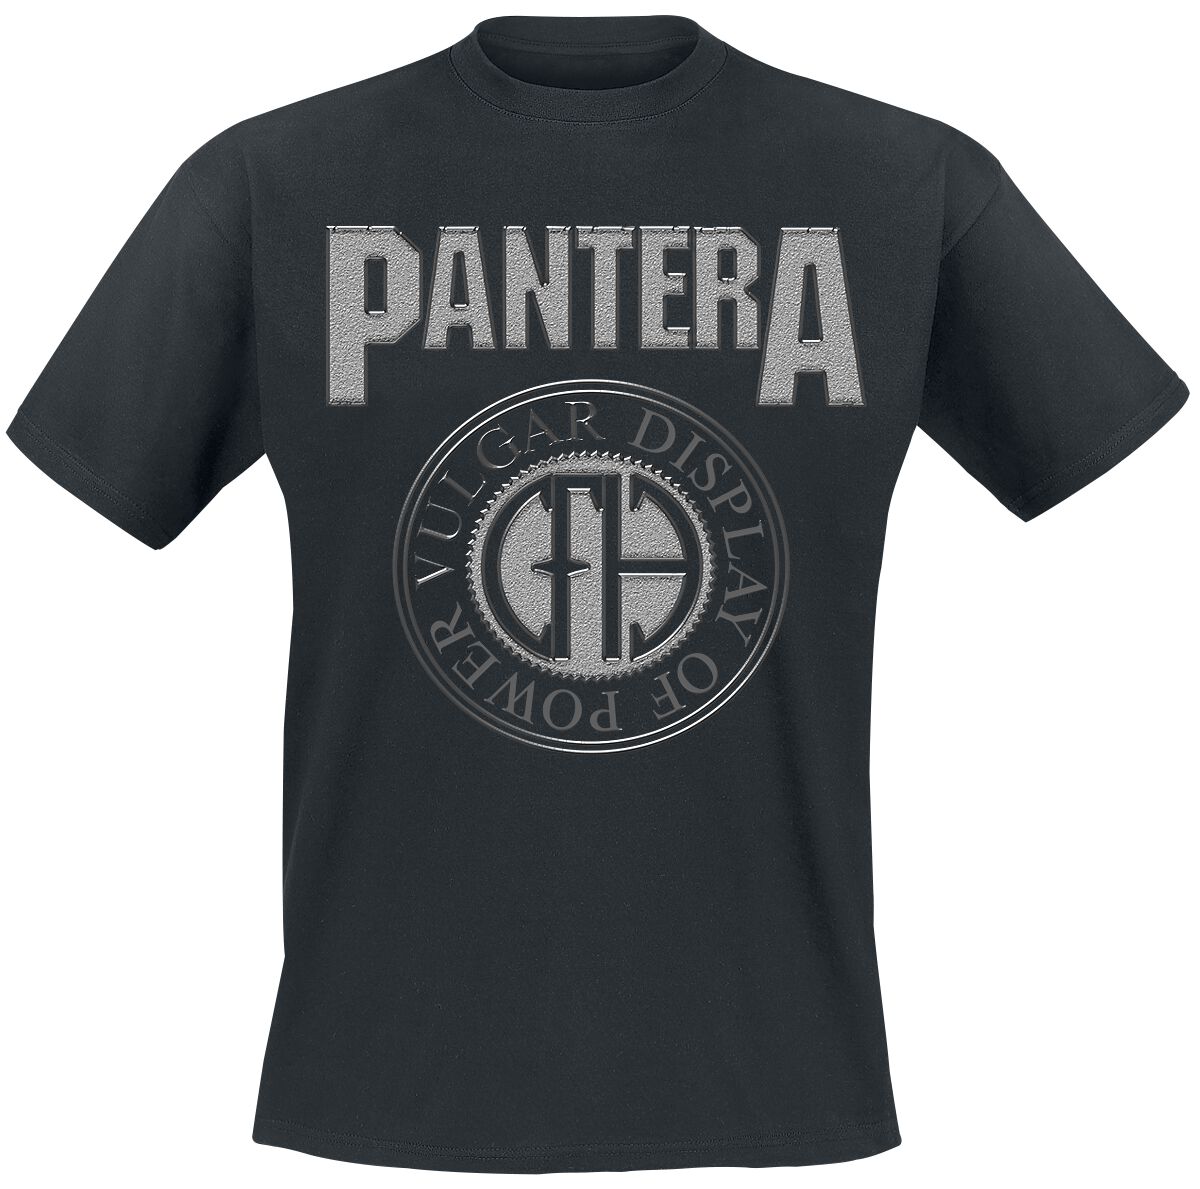 Pantera T-Shirt - S bis XL - für Männer - Größe L - schwarz  - Lizenziertes Merchandise!